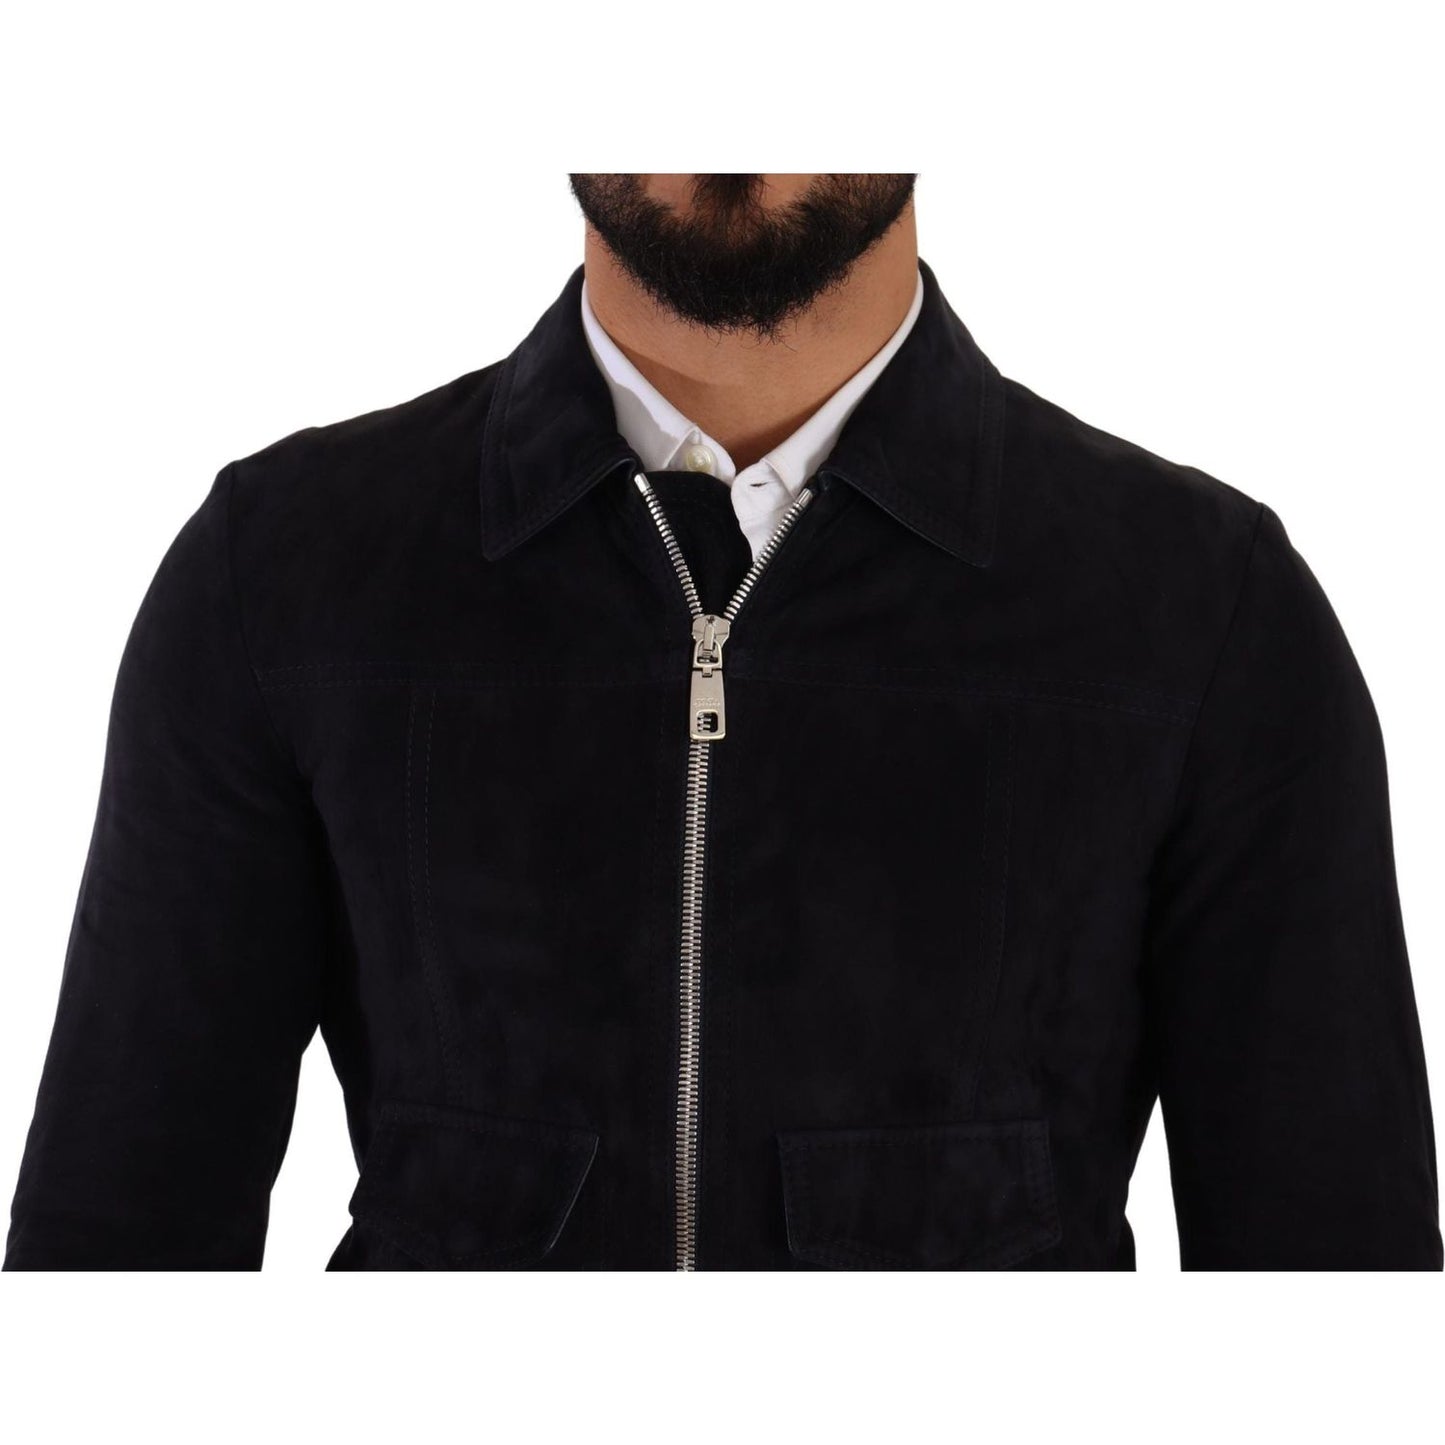 Dolce & Gabbana Elegant Blue Suede Short Jacket blue-suede-lambskin-leather-coat-jacket IMG_3002-scaled-03f83c54-8fc.jpg